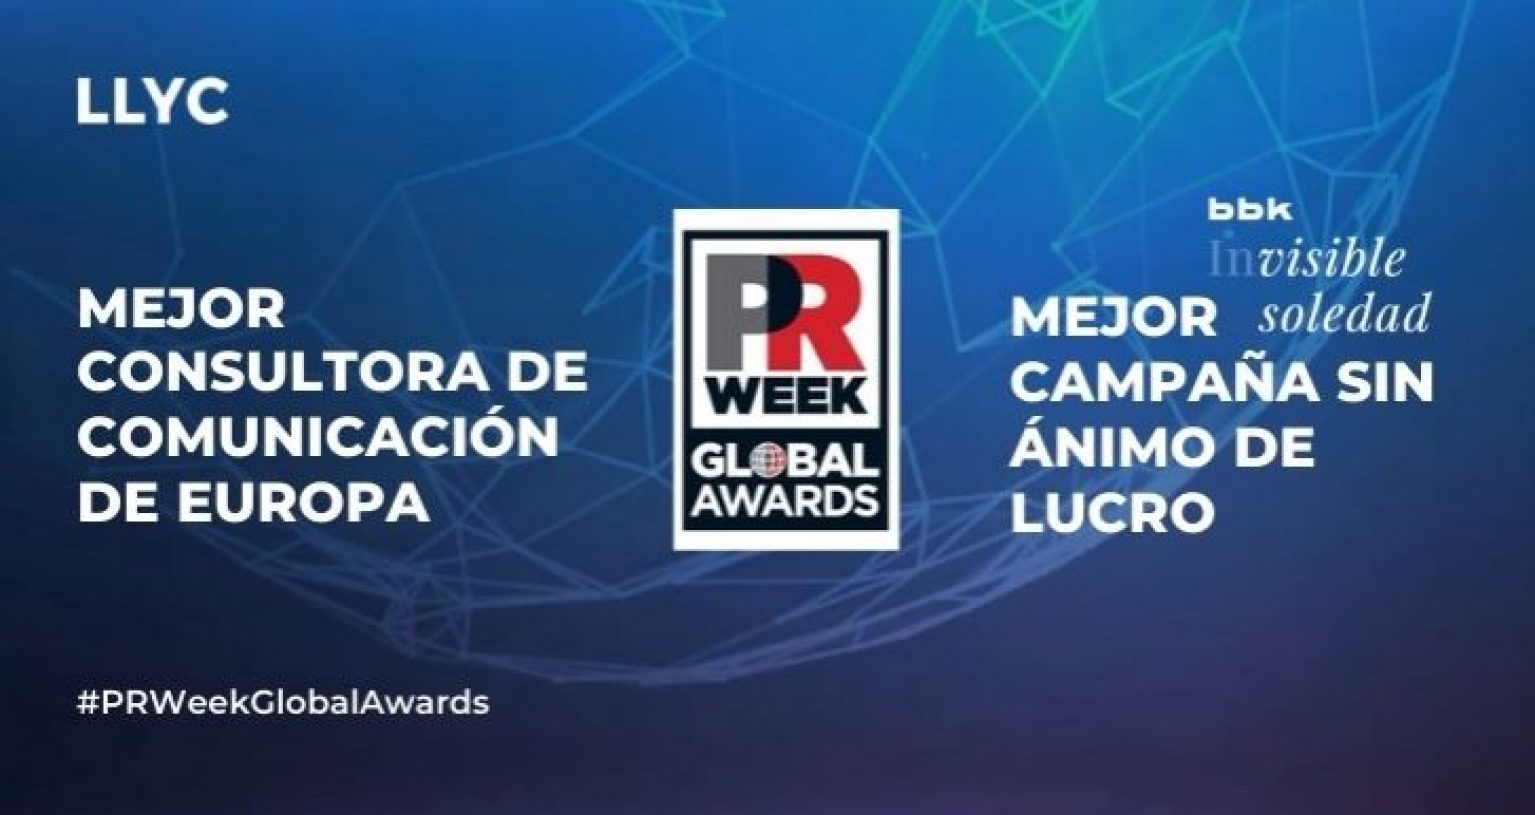 LLYC es reconocida como la mejor consultora de comunicación de Europa en los PRWeek Global Awards 2021